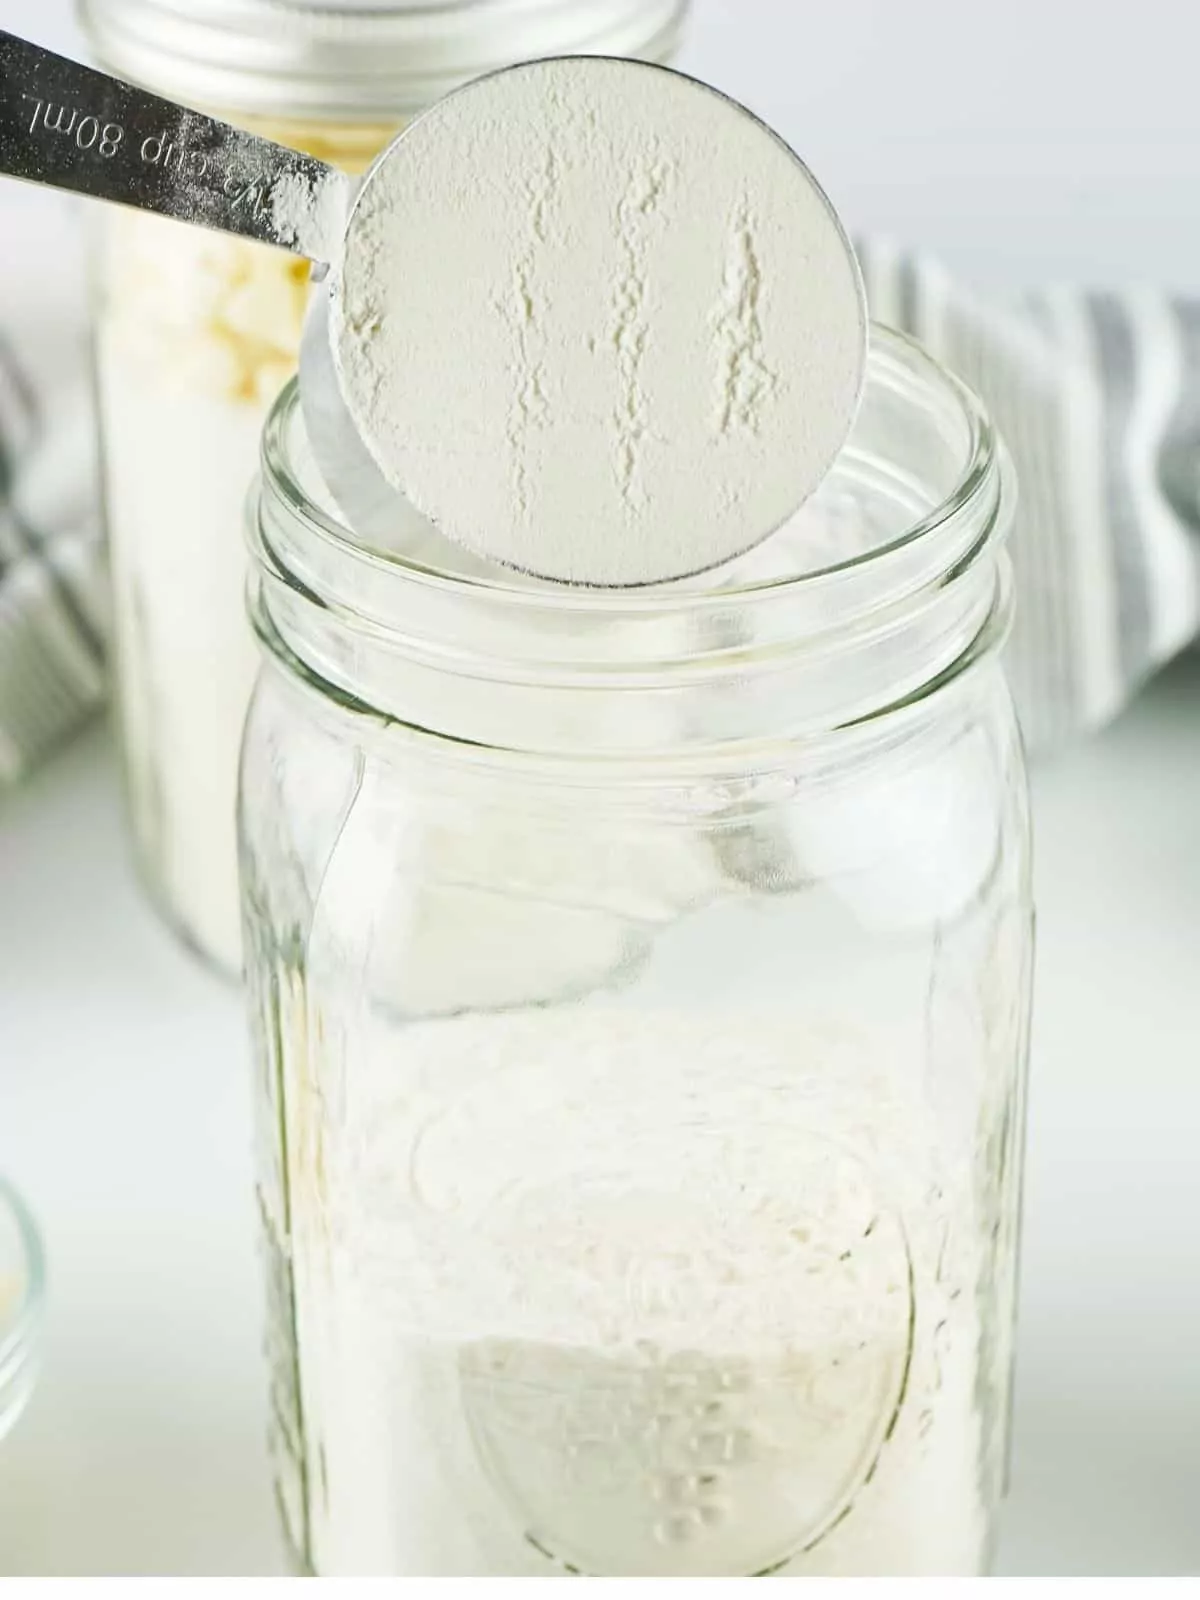 Add flour to mason jar.